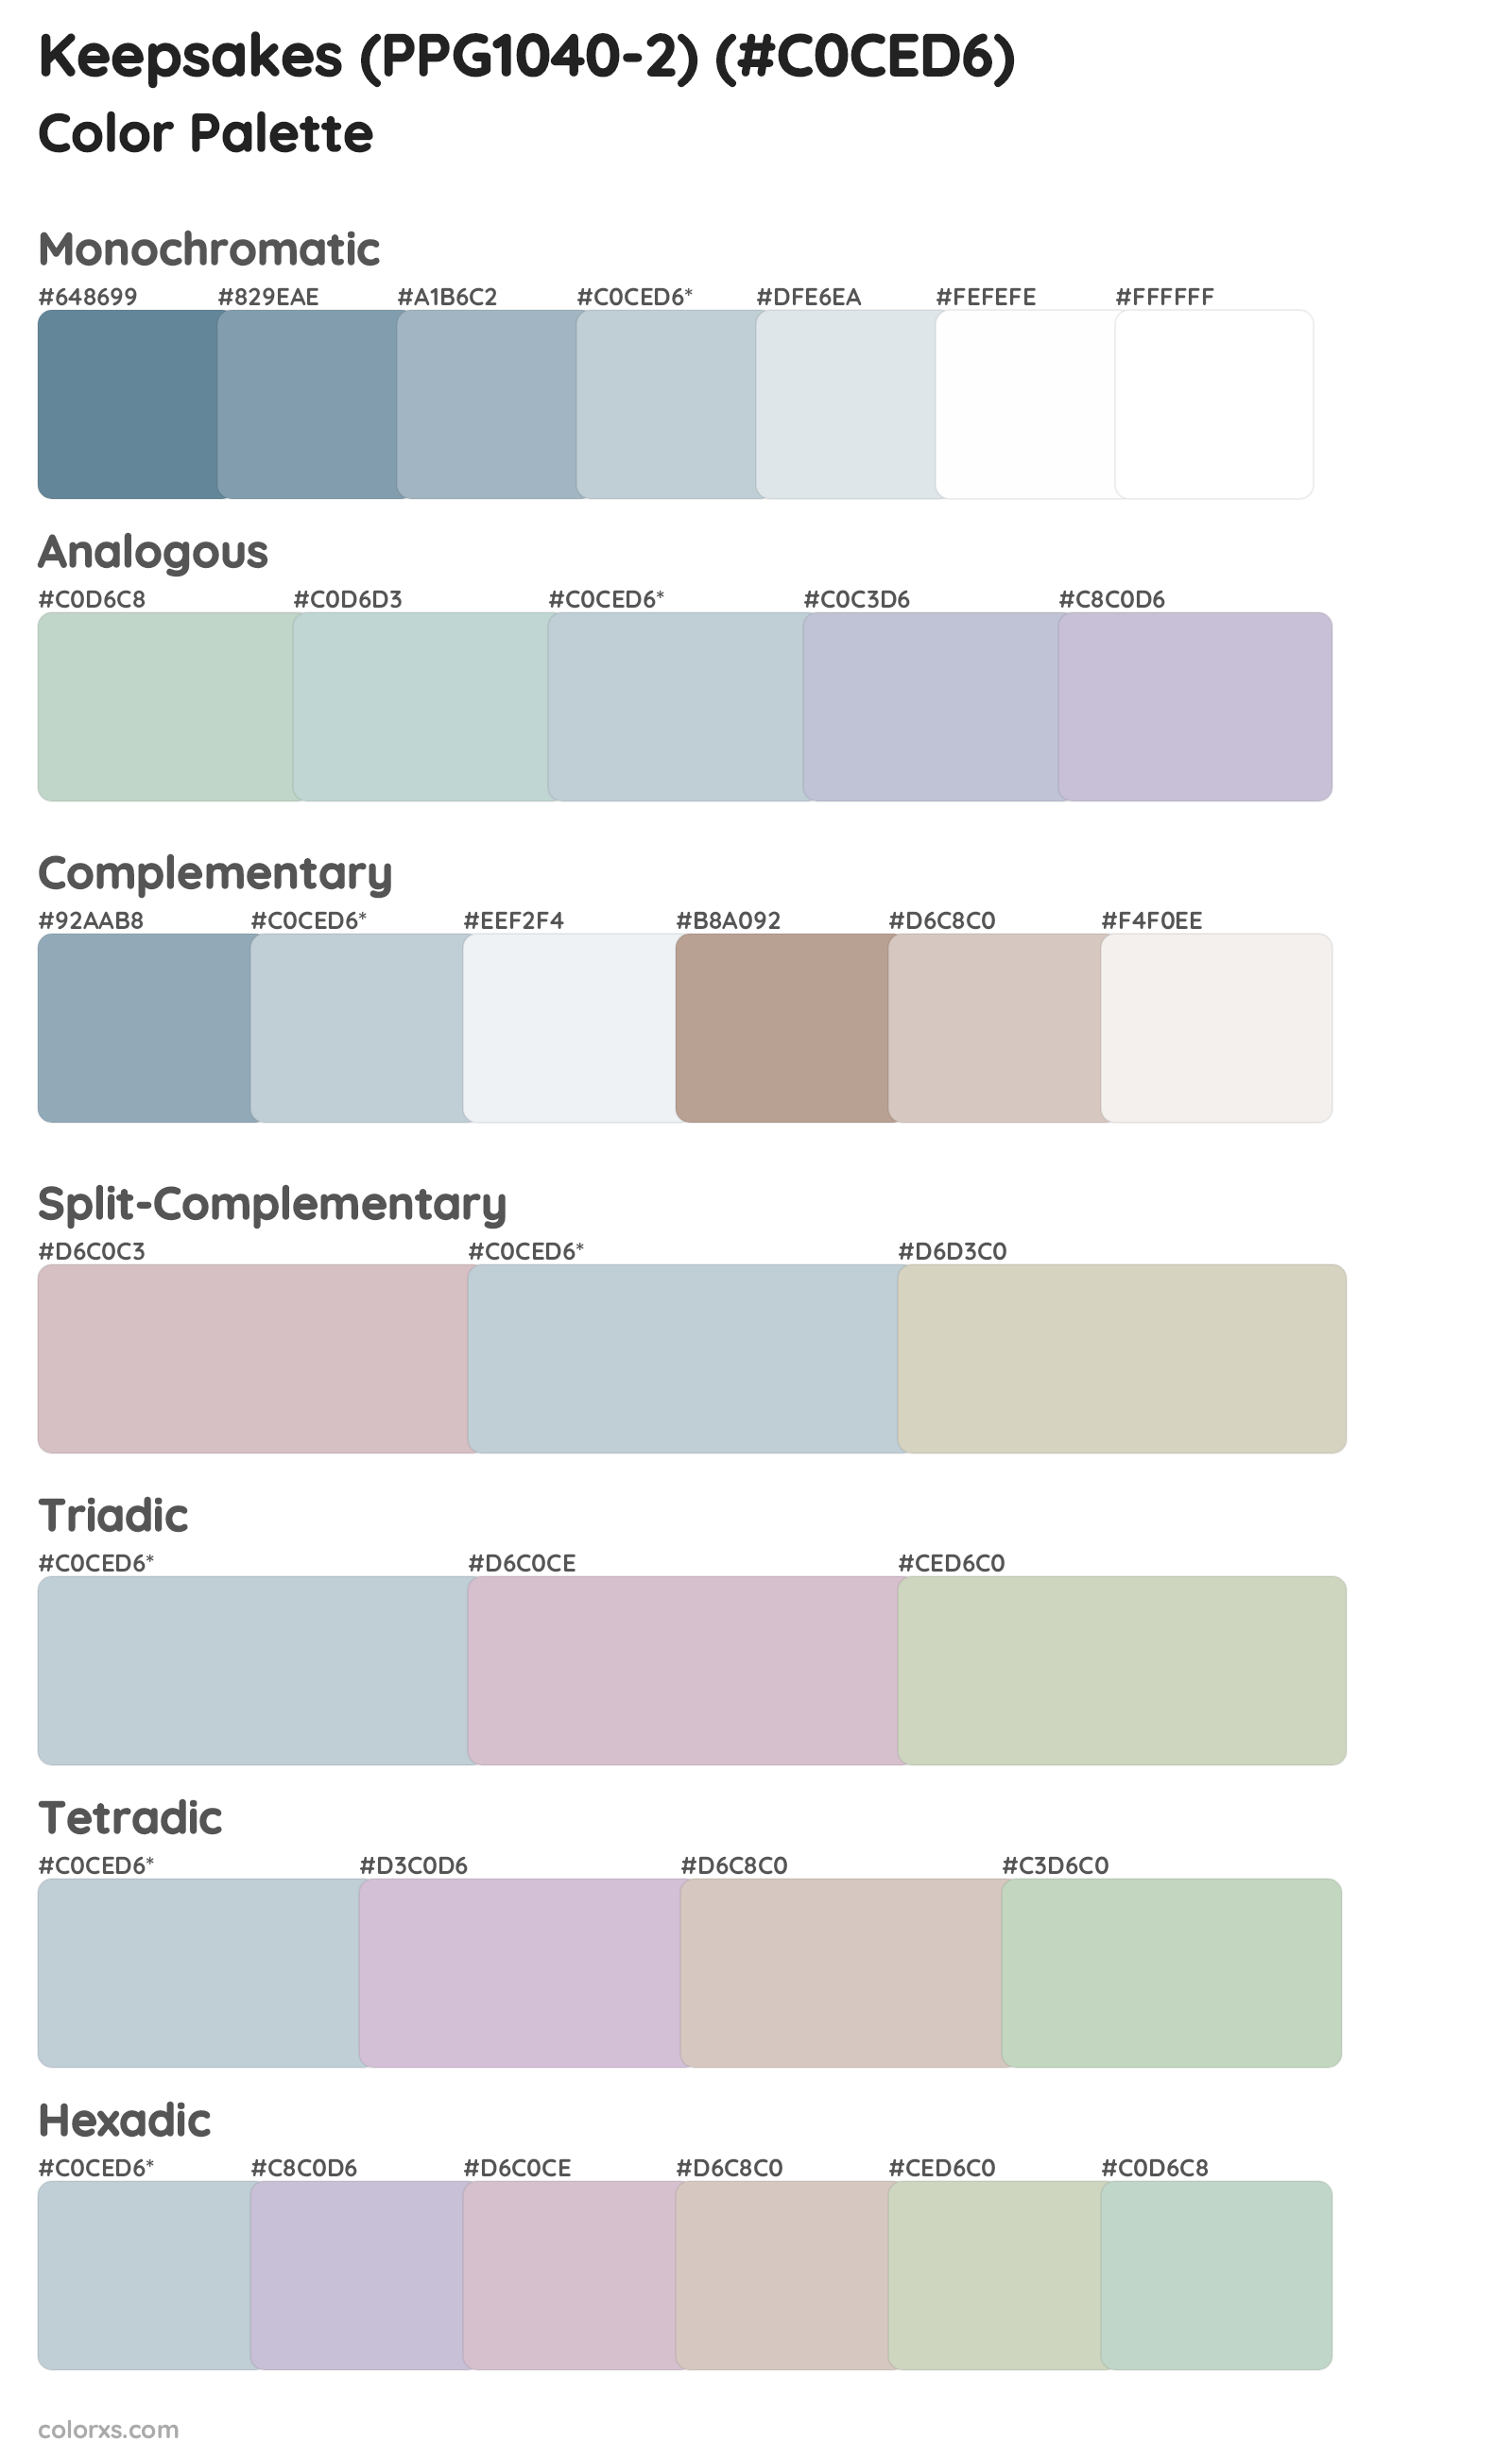 Keepsakes (PPG1040-2) Color Scheme Palettes